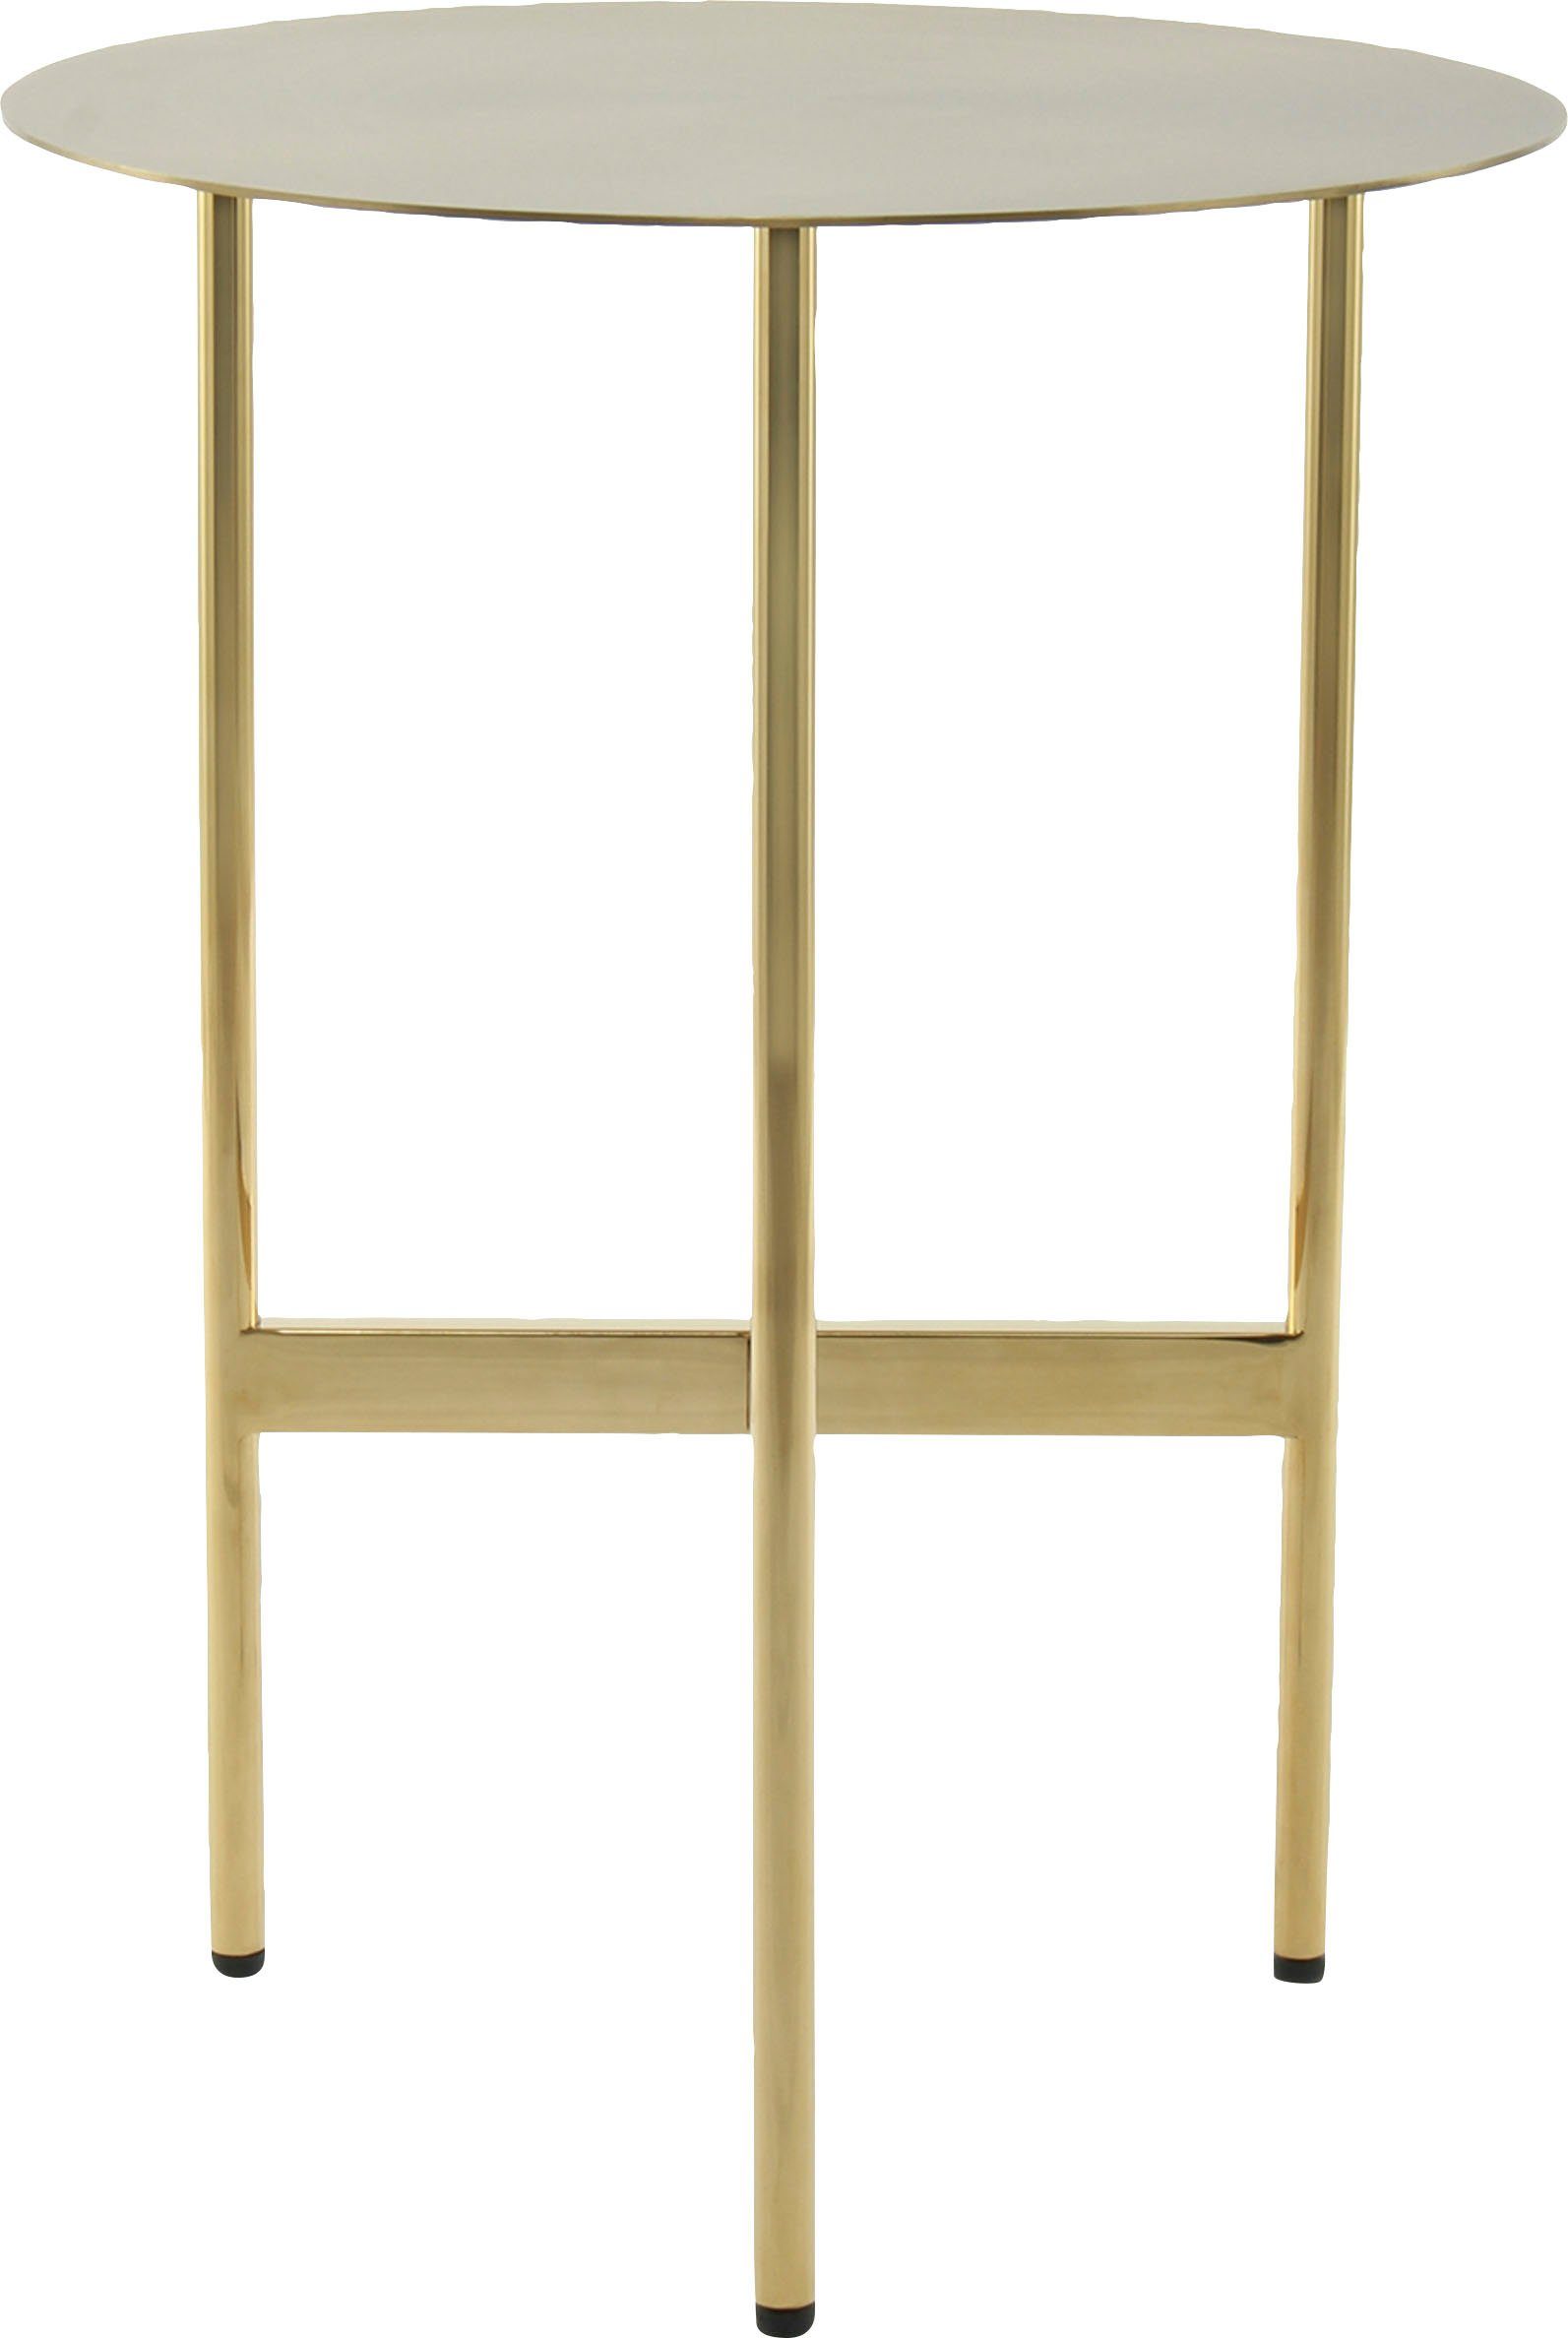 Kayoom Beistelltisch Pema, minimalistisches Gestelldesign Gold Edelstahl, Ablagefläche aus runde